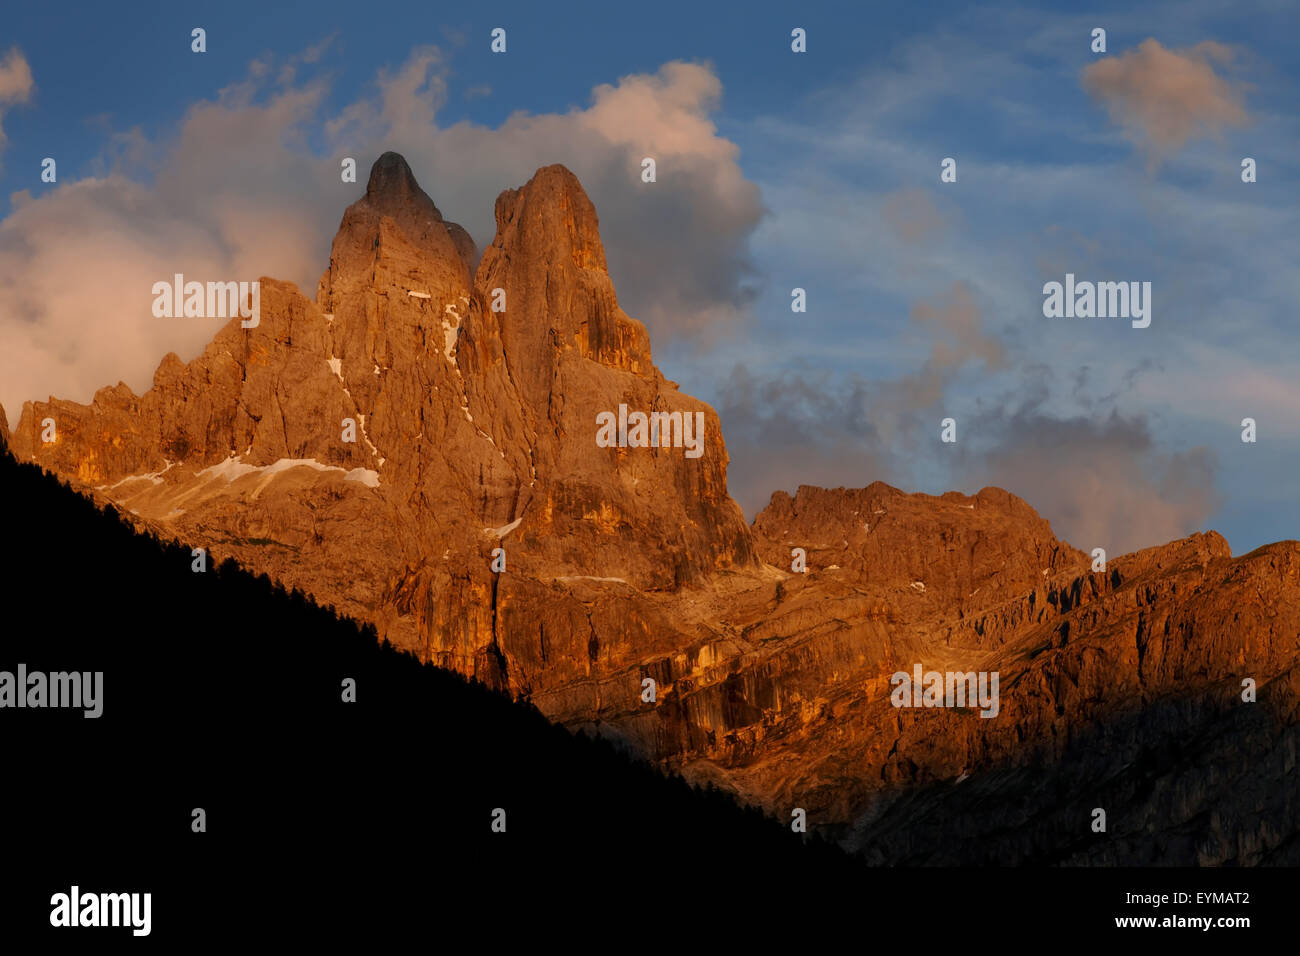 Alpenglow, sundown, mountains, Cima di Val di Roda, the Dolomites mountains, the Alps, Italy Stock Photo